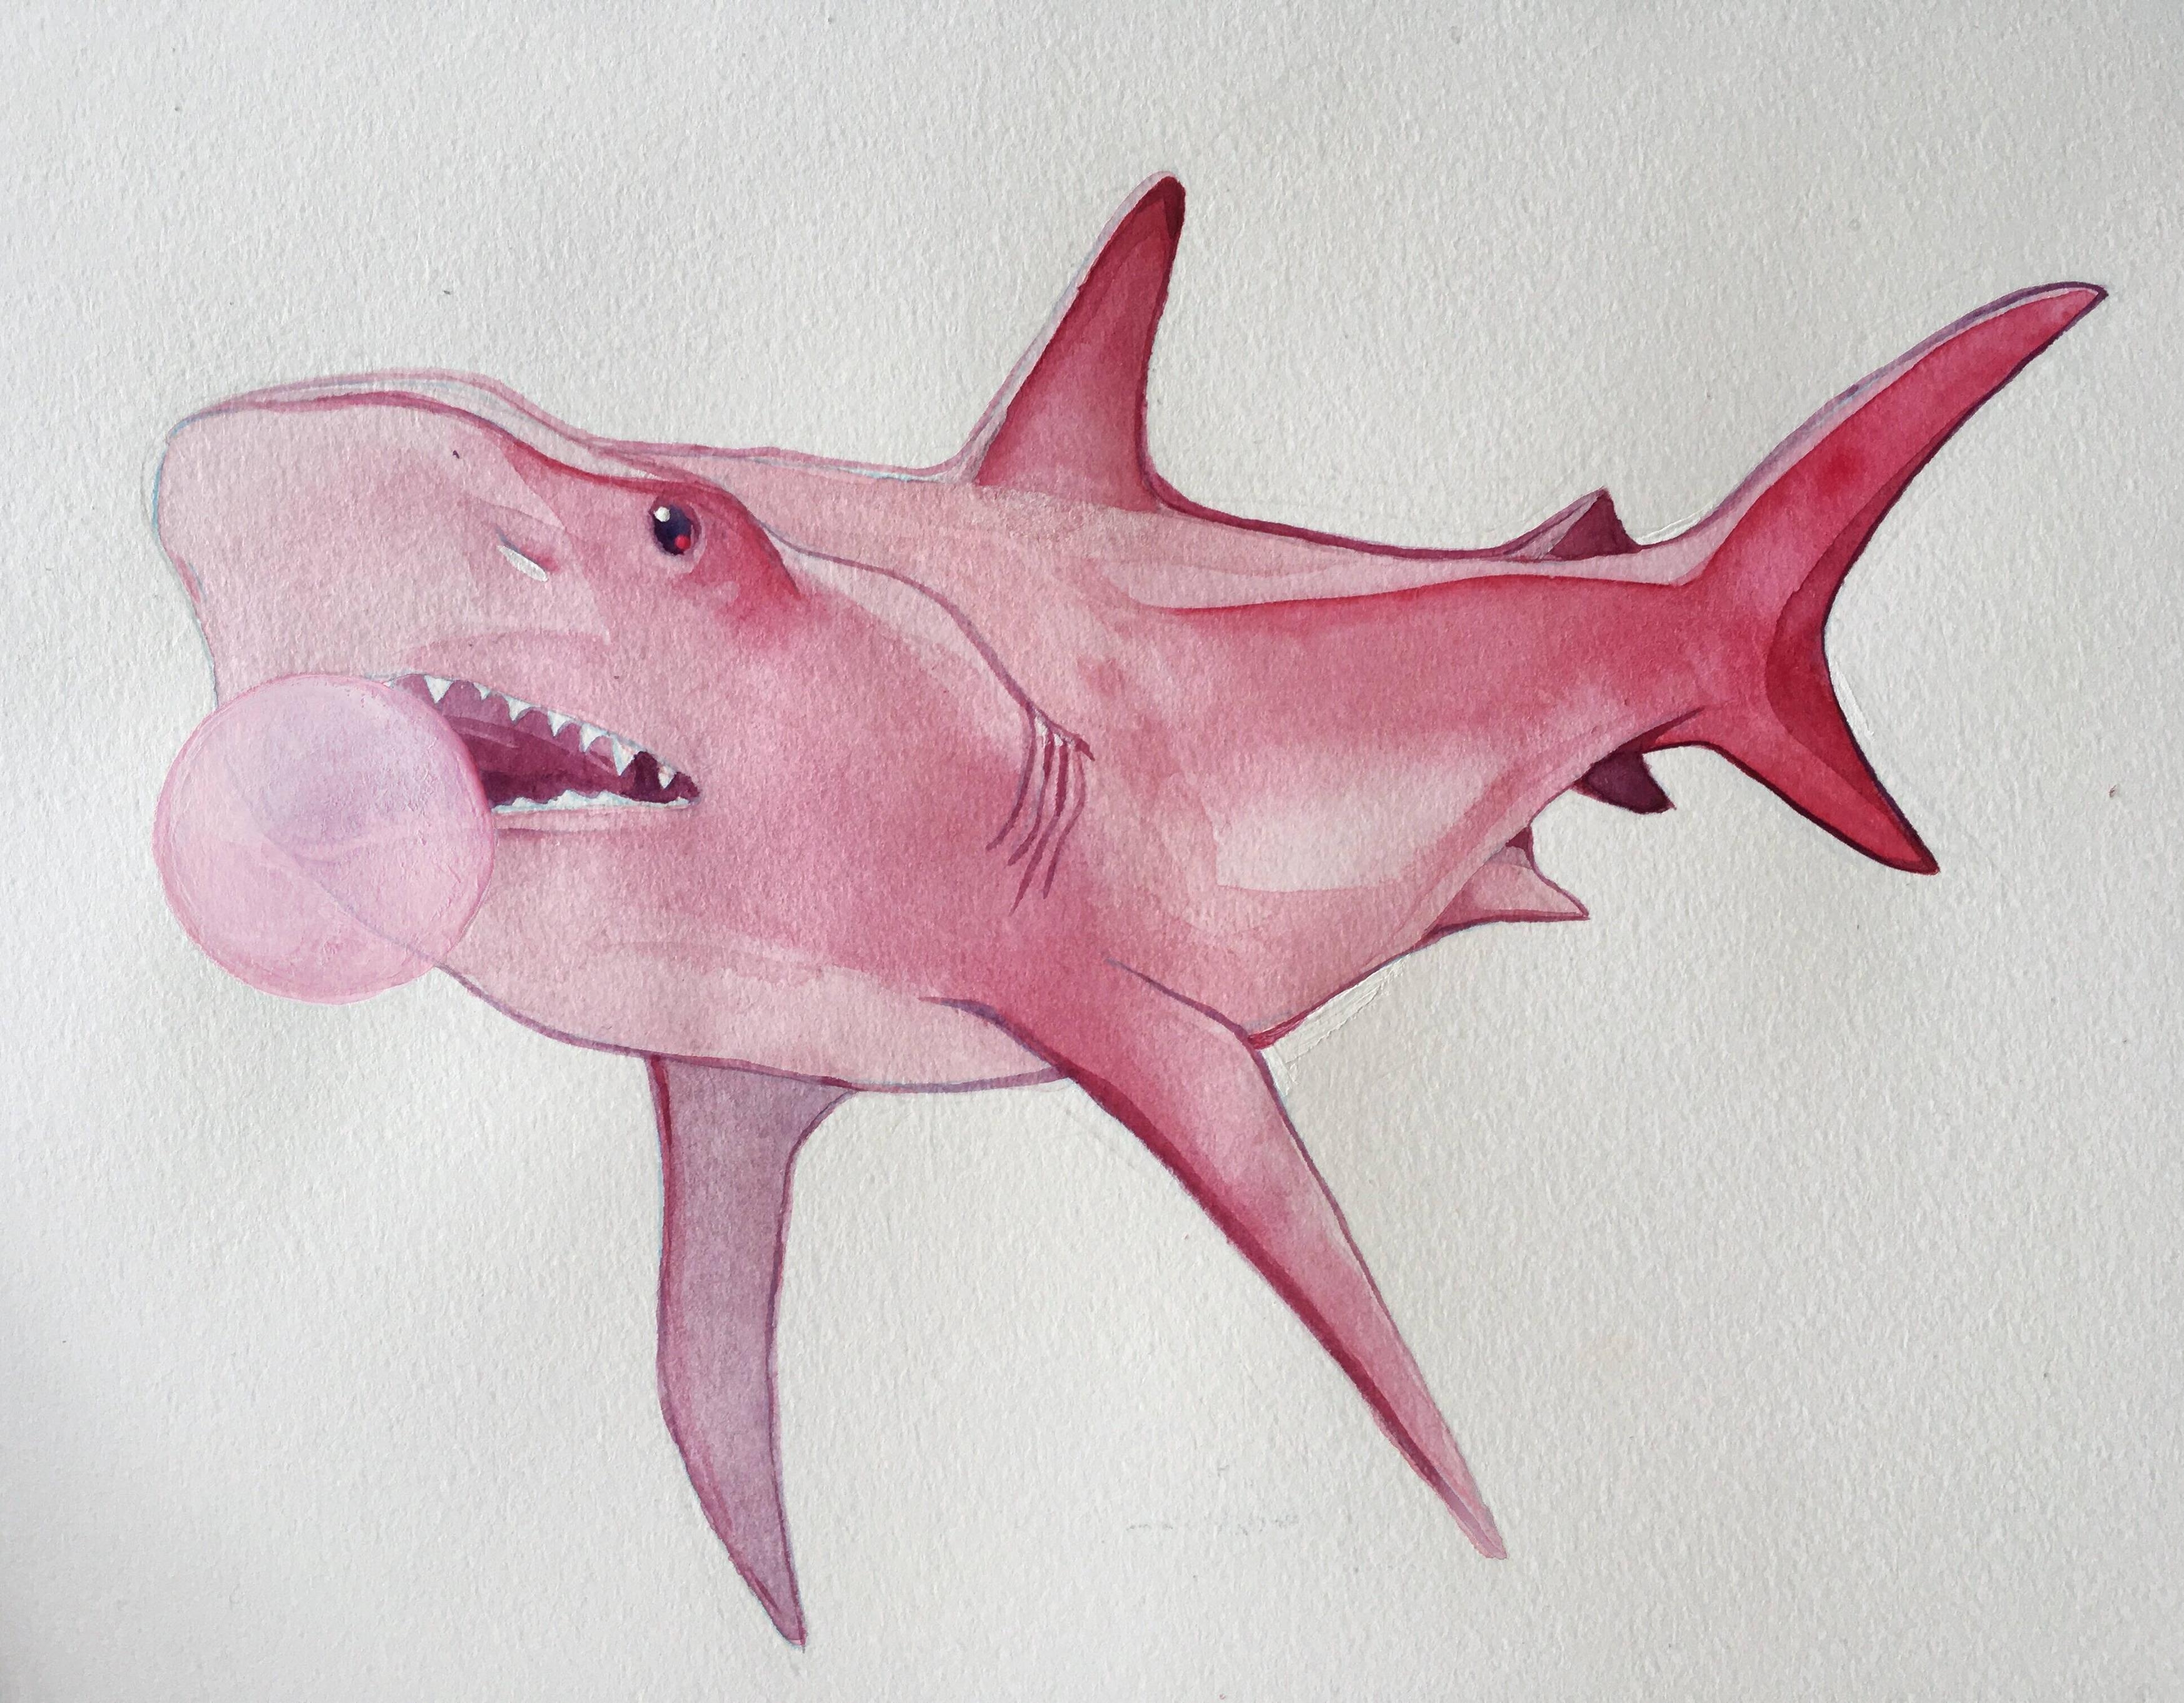 Розовая акула